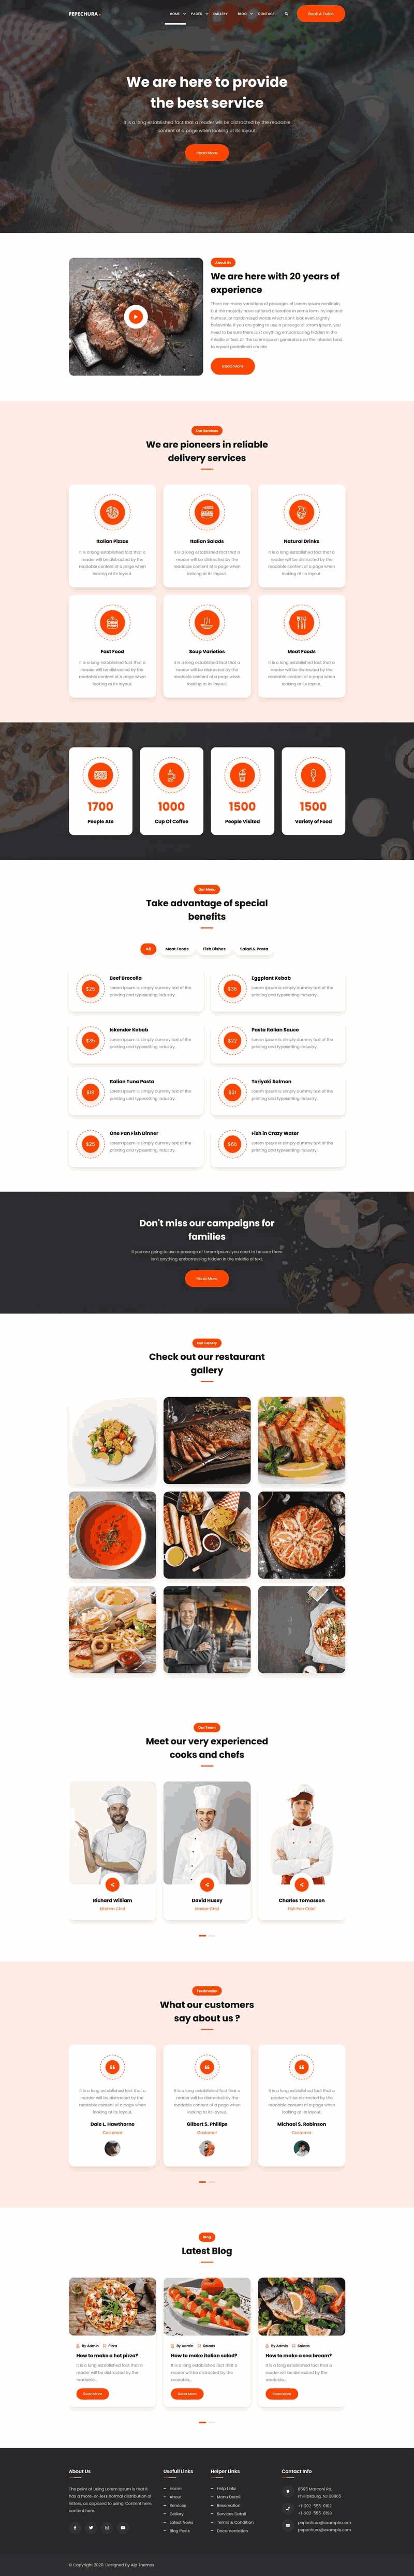 西式餐厅美食图片展示Wordpress模板（带手机版）效果图